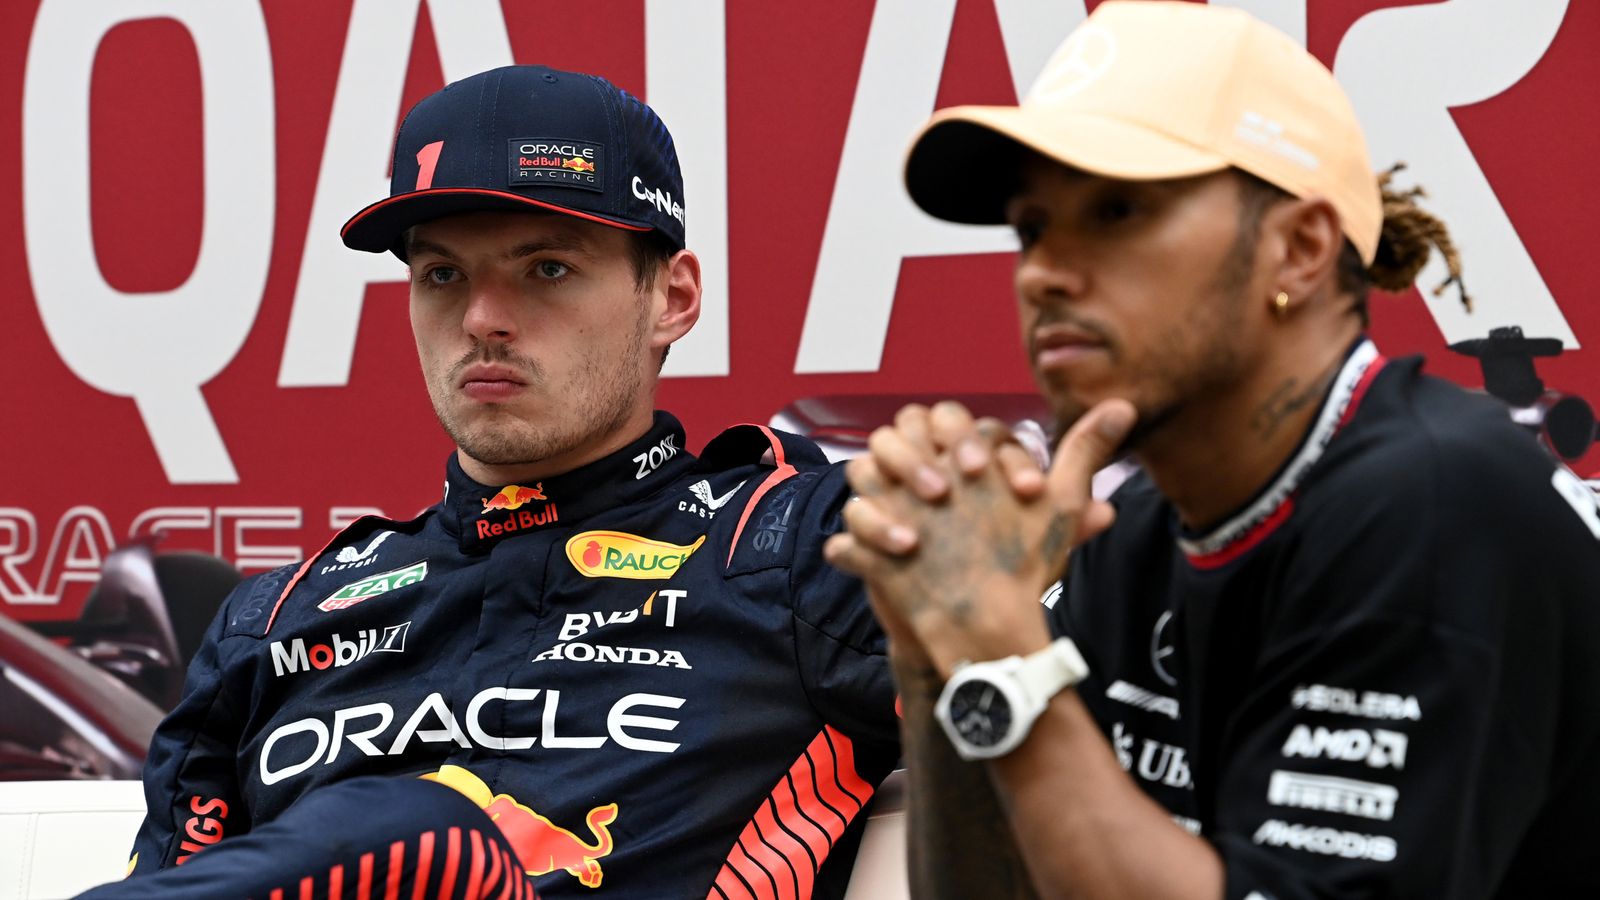 GP du Qatar : Max Verstappen affronte Lewis Hamilton et George Russell au départ alors que la F1 attend une décision cruciale concernant les pneus